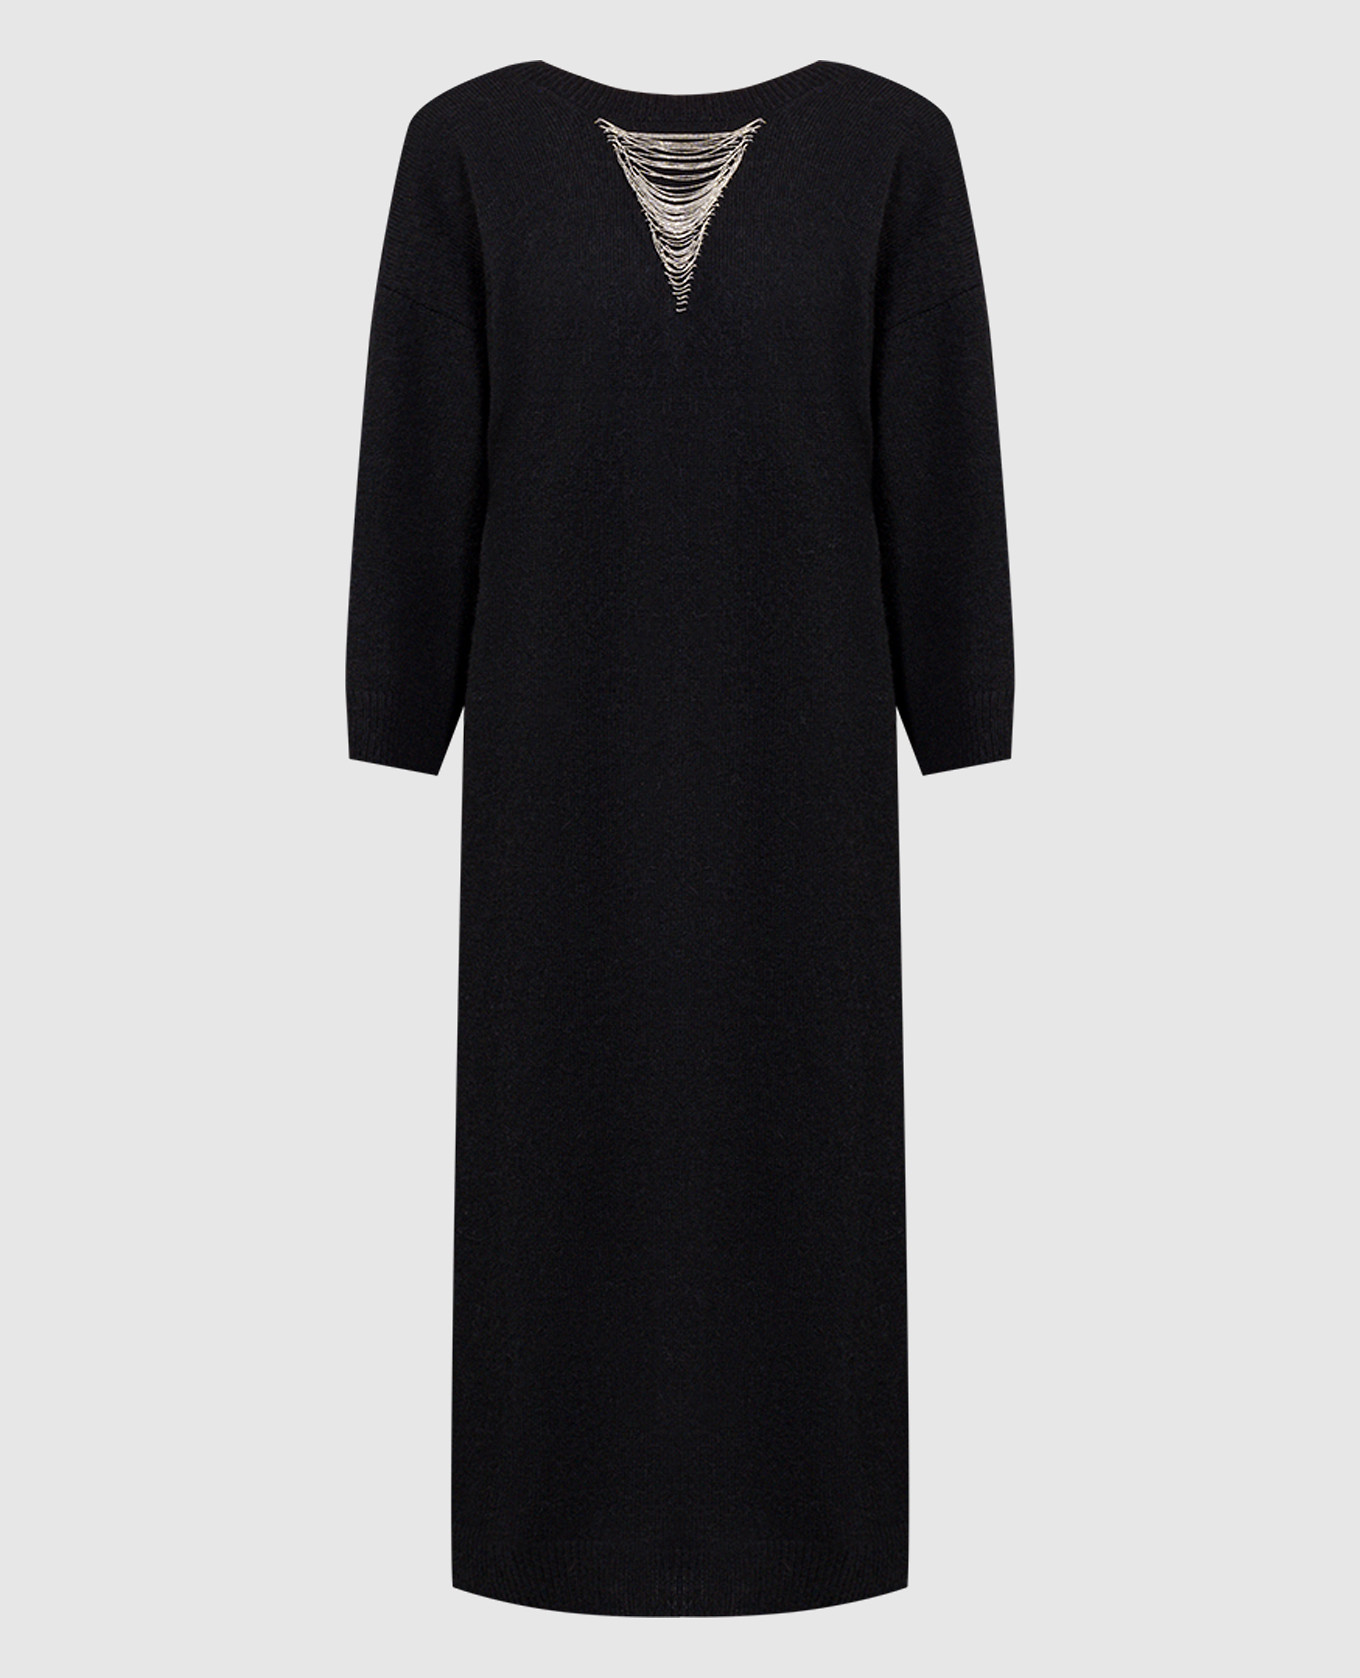 Черное платье миди из шерсти, шелка и кашемира с цепочкой мониль.